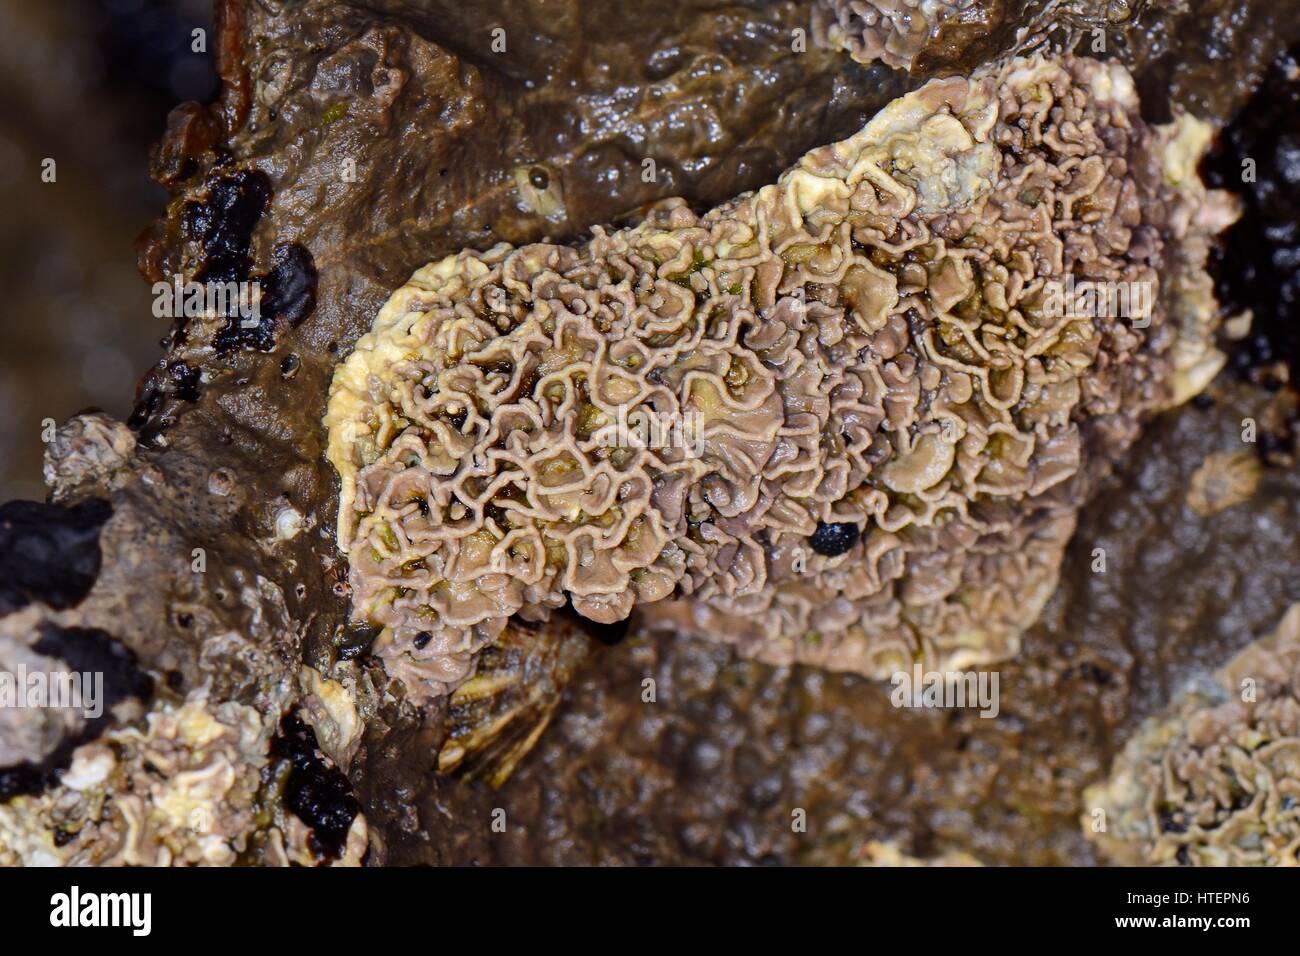 Corteza coralina (Lithophyllum tortuousum) de un cultivo de algas rojas coralinas incrustantes sobre rocas intermareales expuestos en la marea baja, Asturias, España, Agosto. Foto de stock